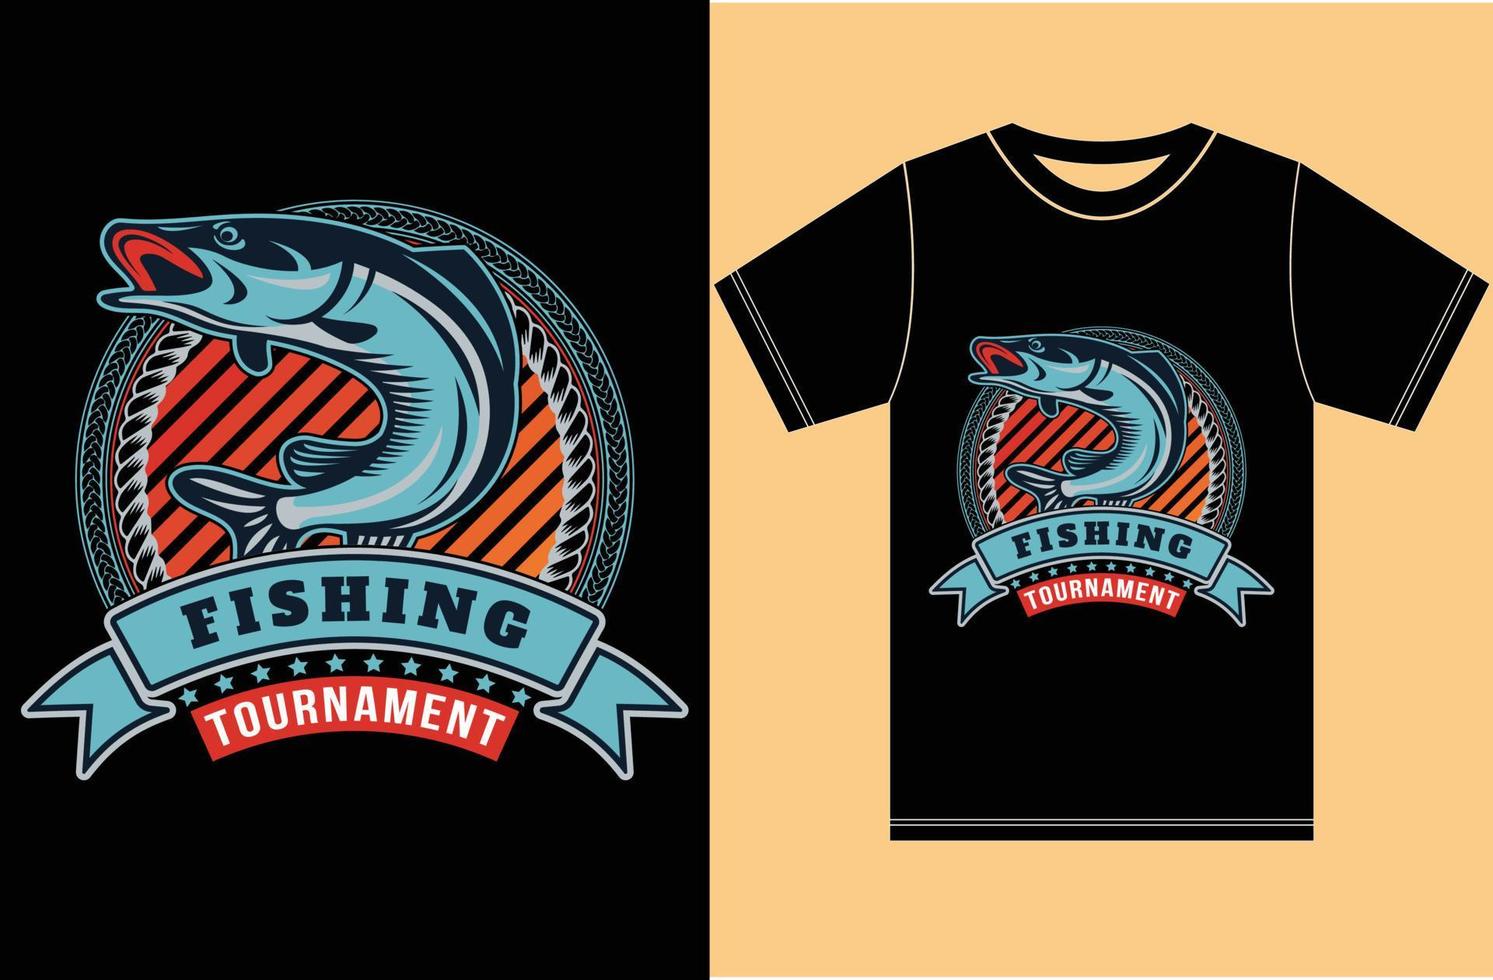 diseño de camiseta de amante de la pesca ... ilustraciones de adobe illustrator vector